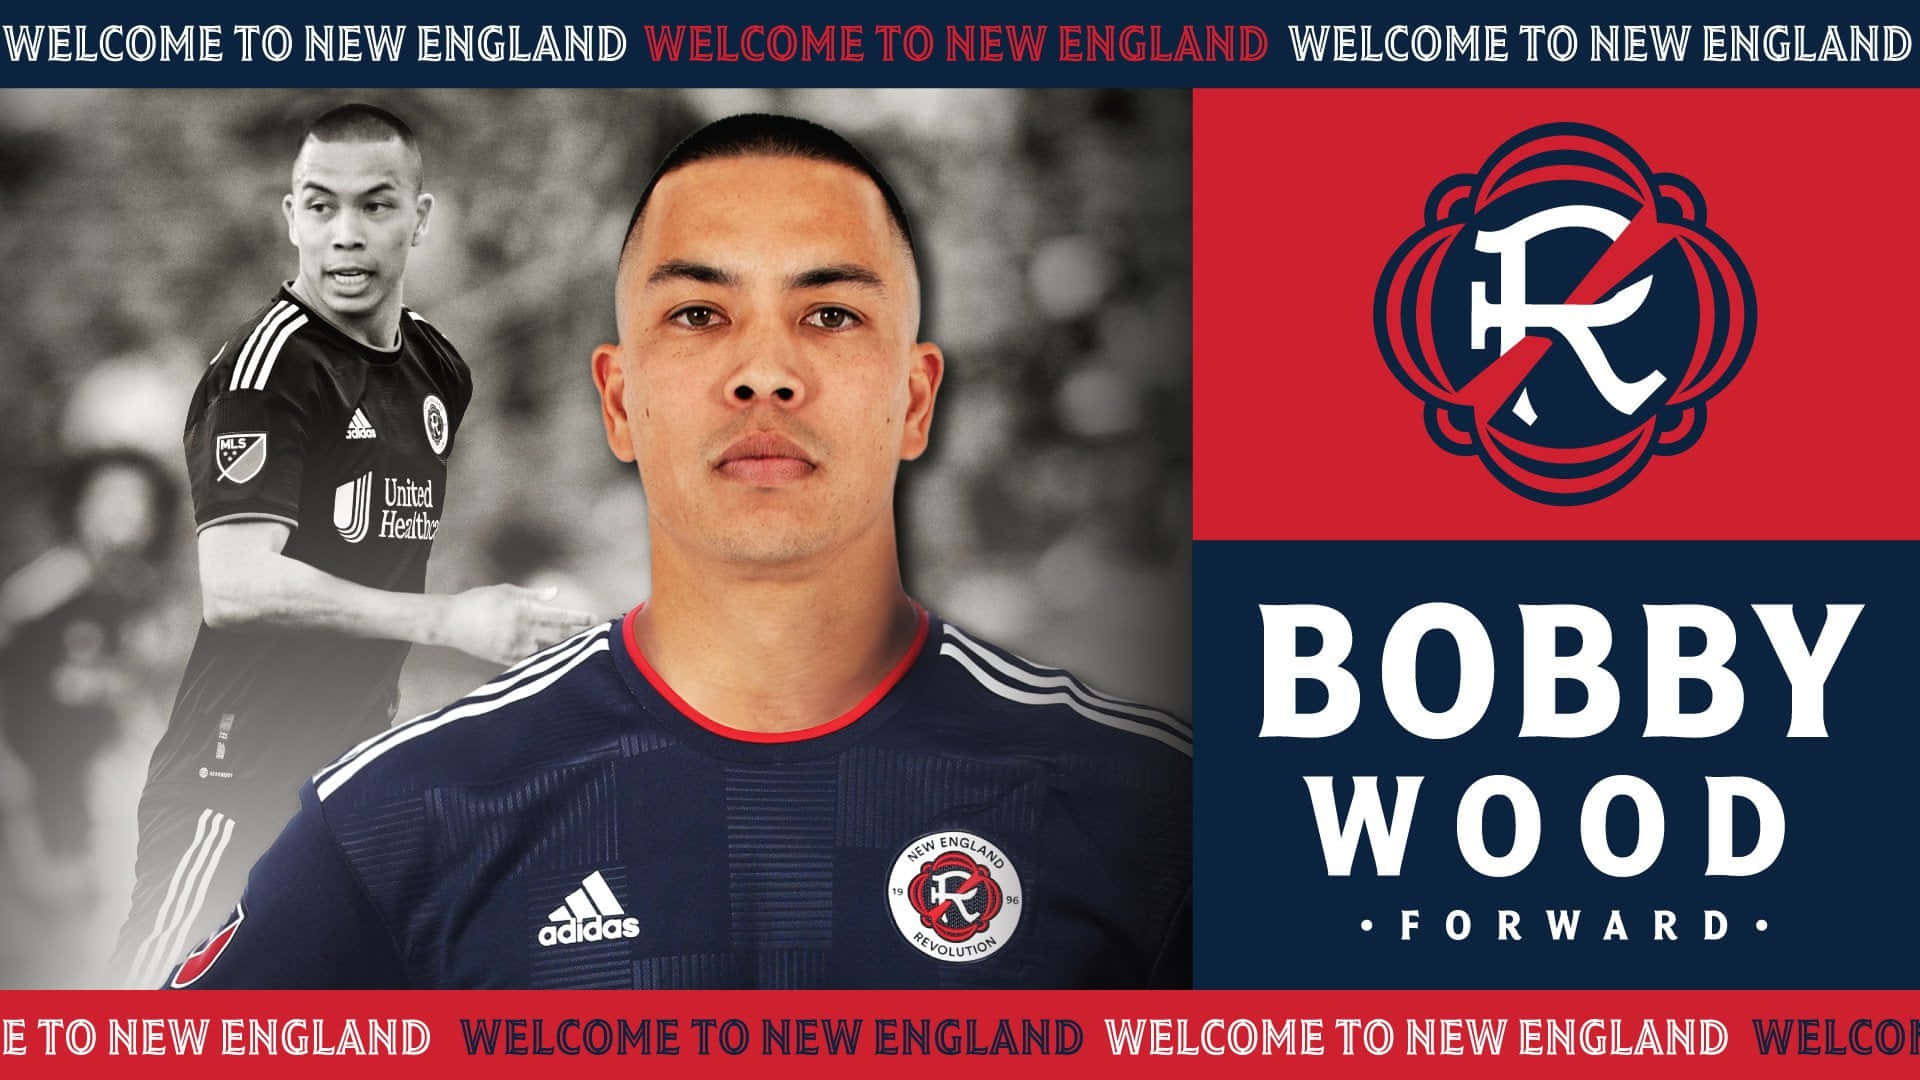 Bobbywood Willkommensplakat Für Das New England Team Wallpaper